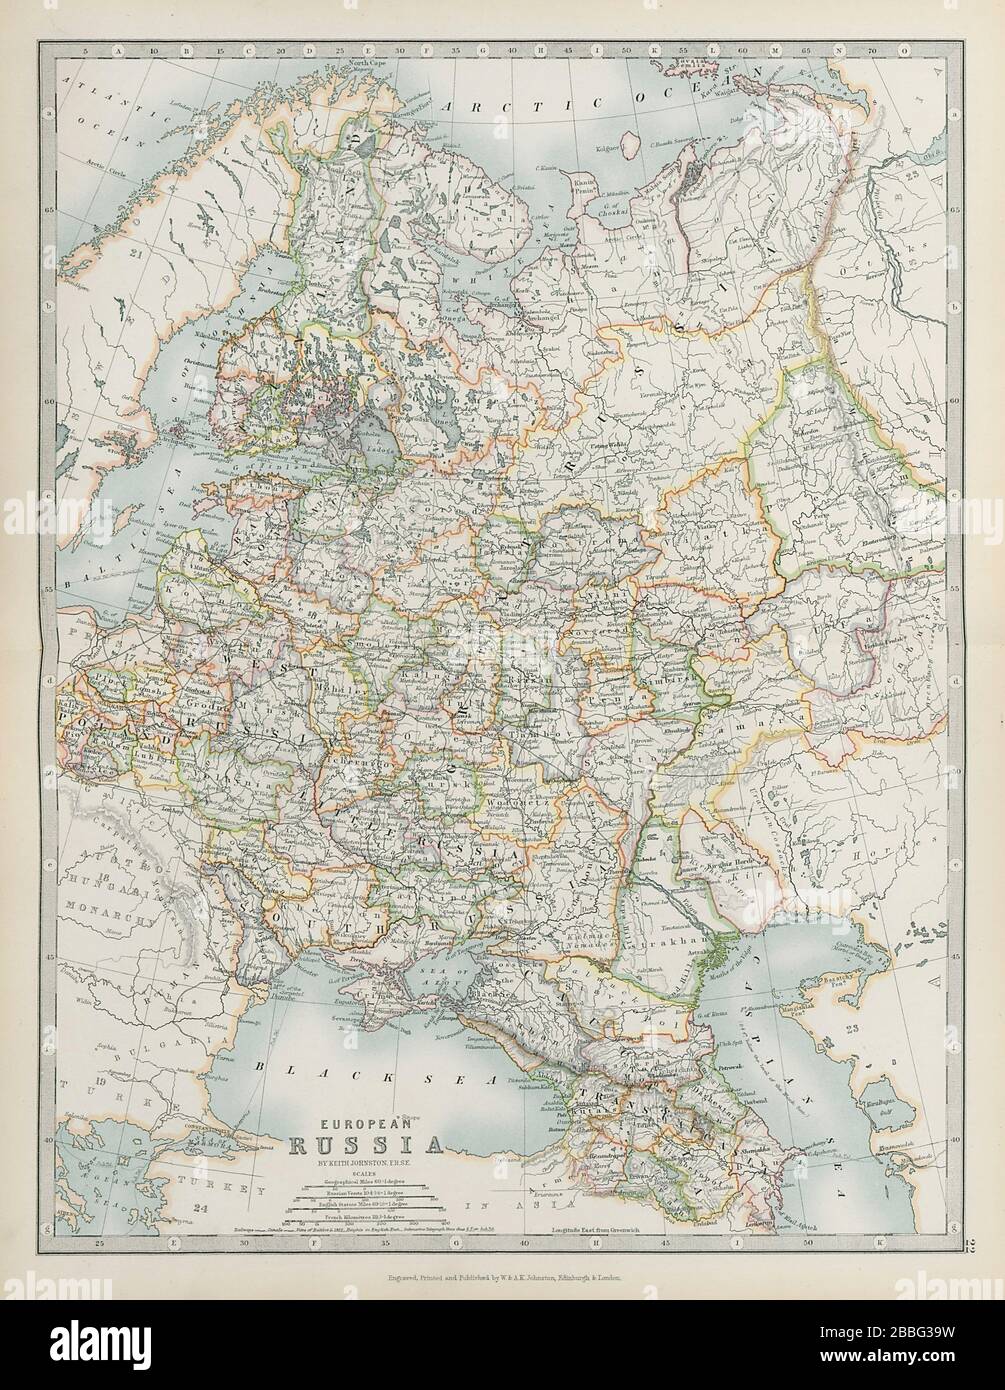 EUROPEAN RUSSIA Including Finland Caucasus Poland Ukraine JOHNSTON 1901 map Stock Photo